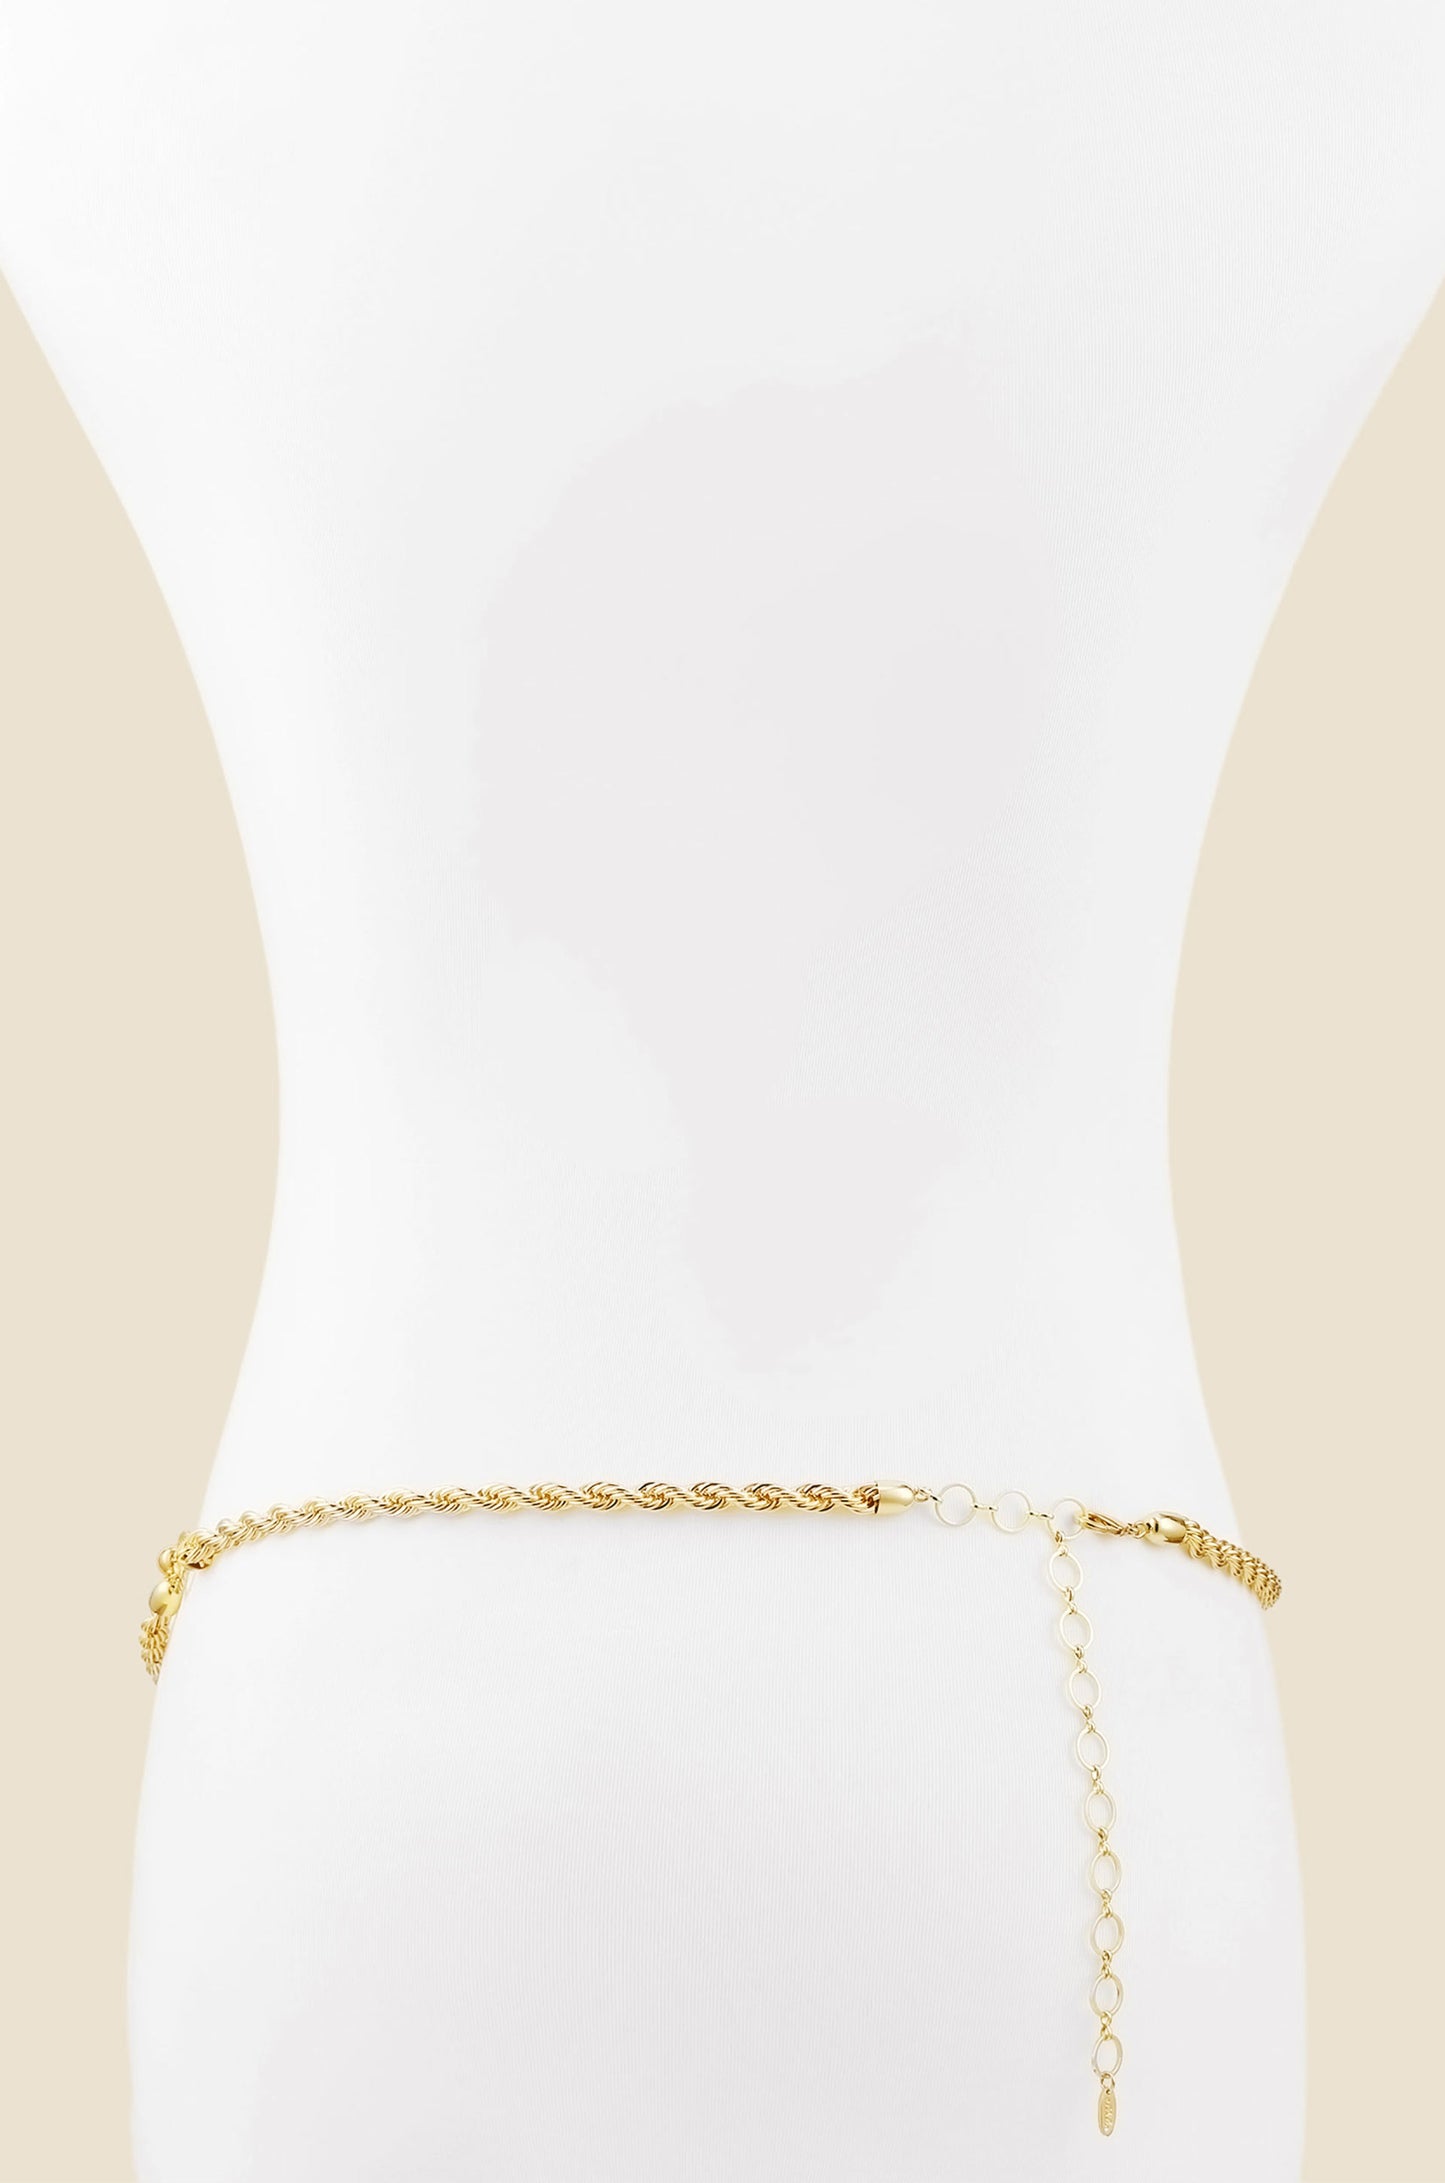 Fashion Gold Waist Chain Belt, Apparel Fashion Chain Belt